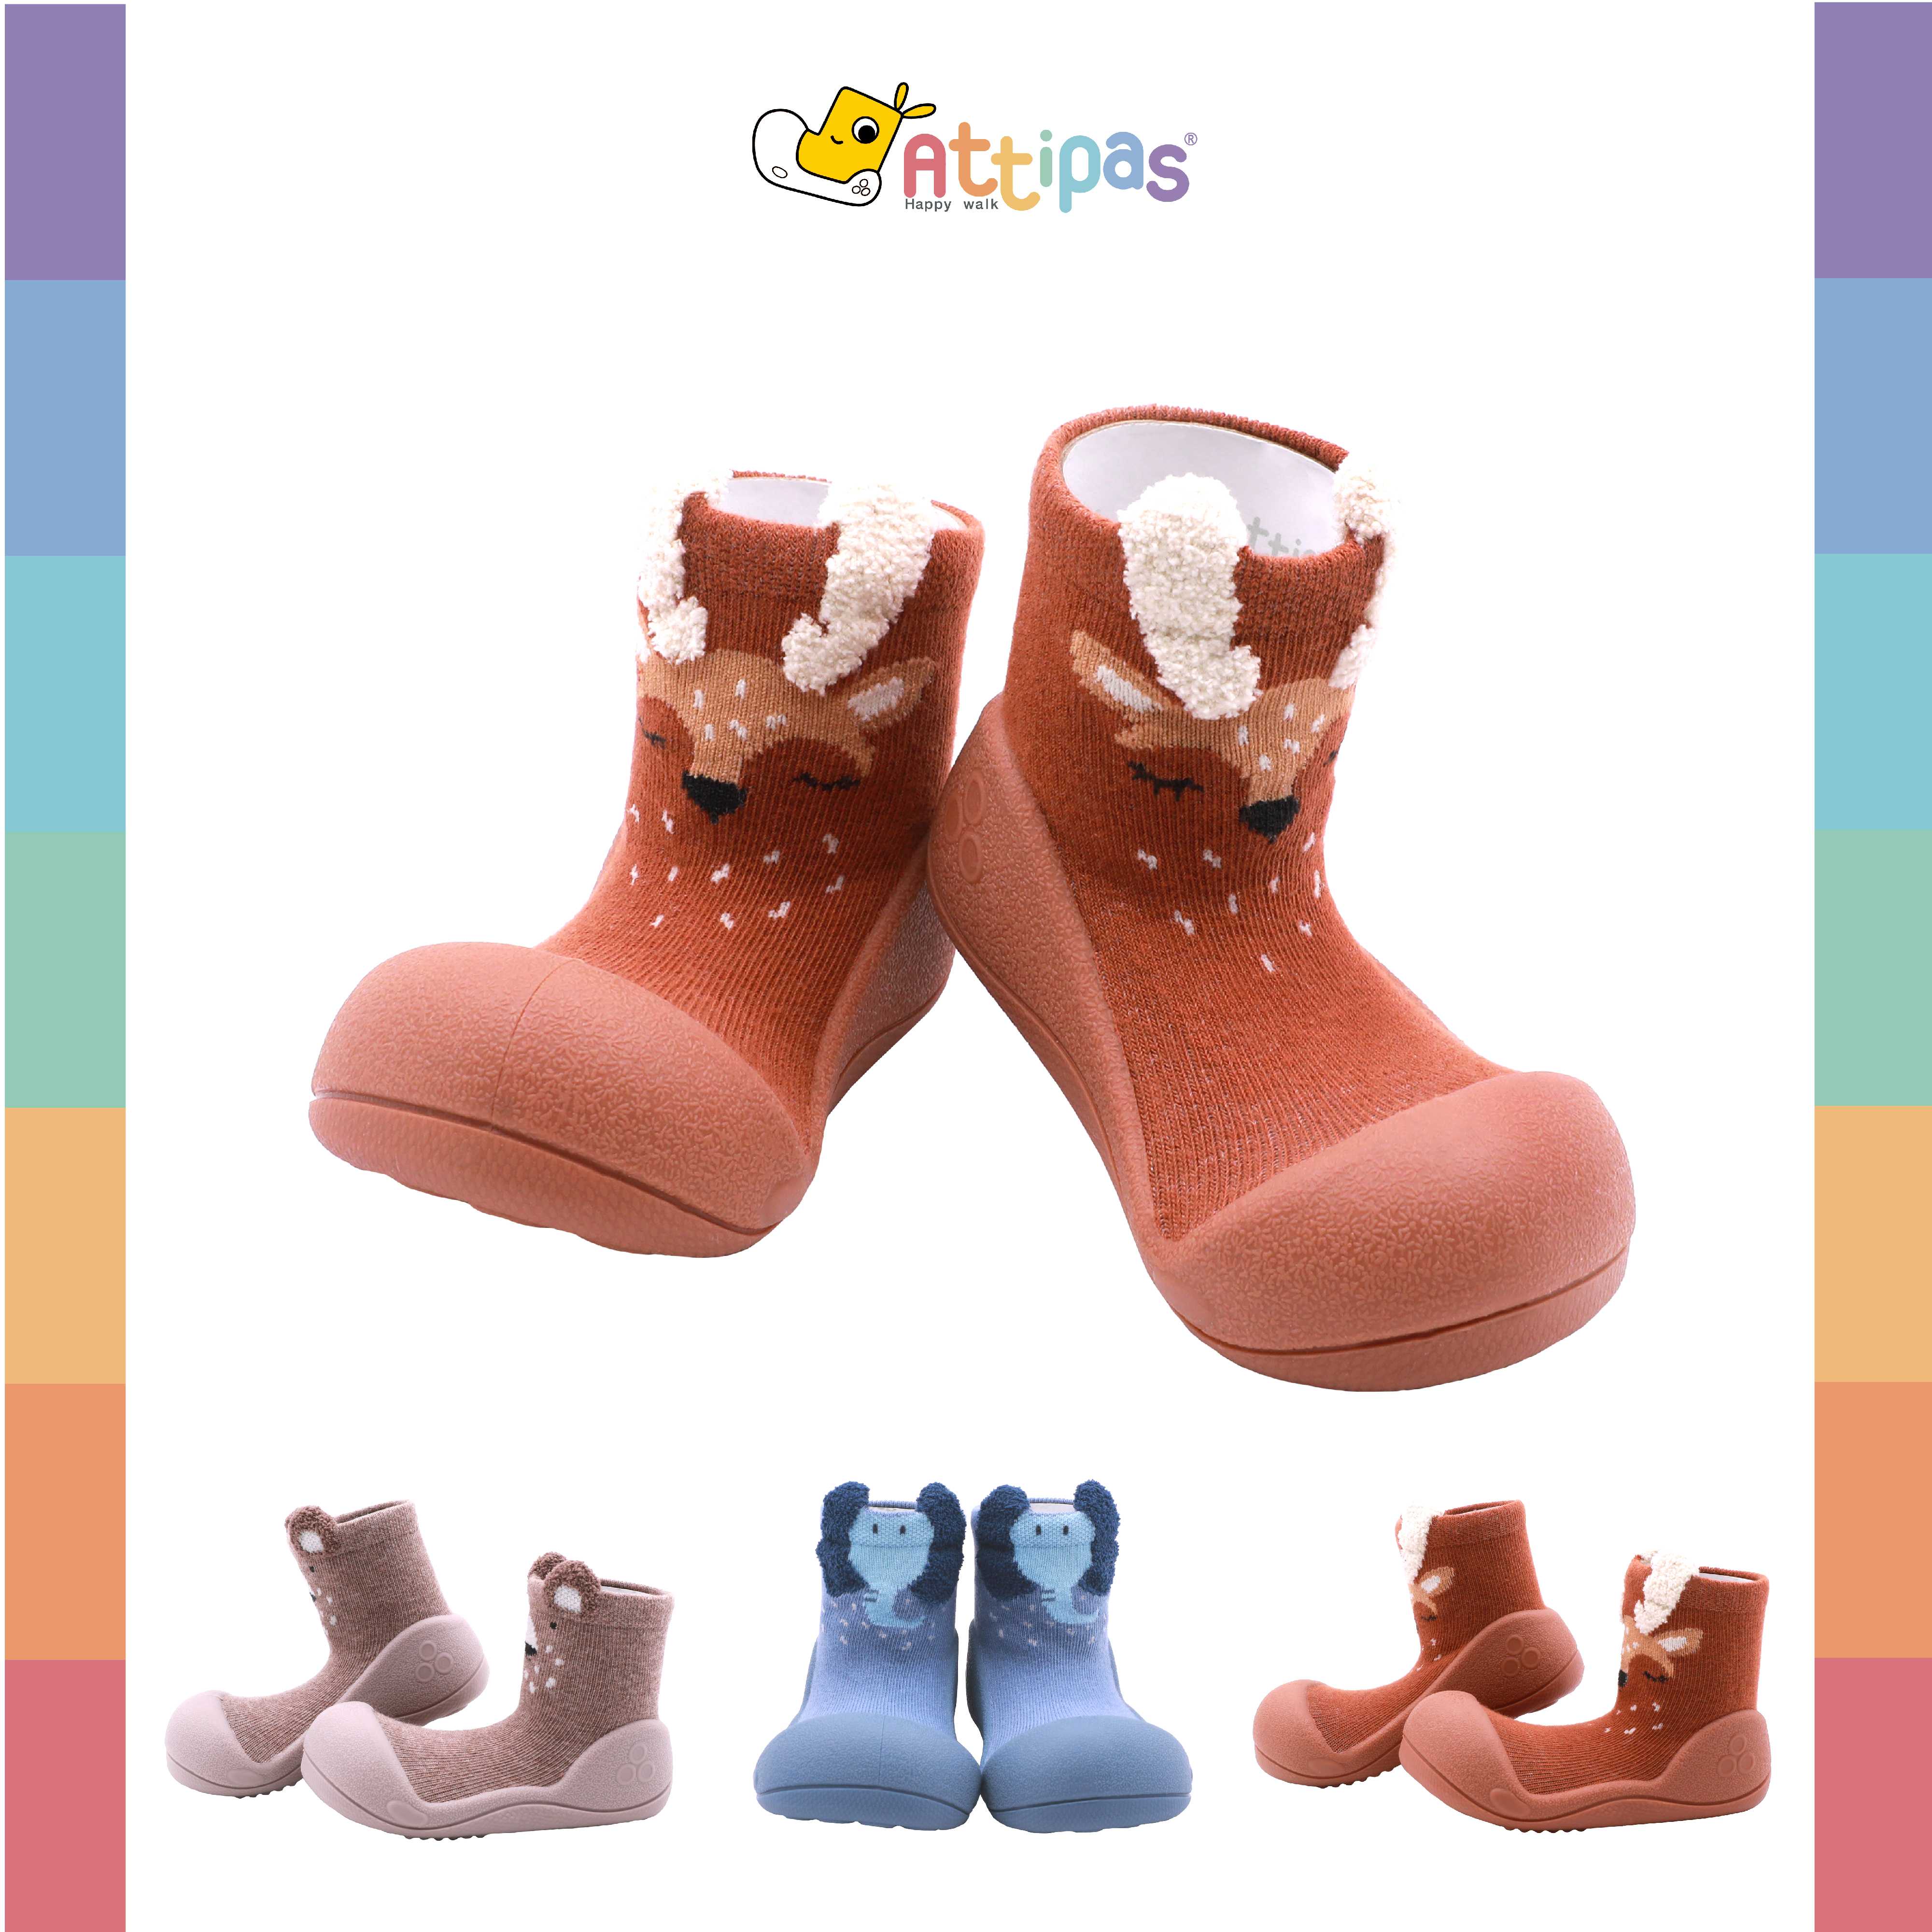 รองเท้าหัดเดิน Attipas - รุ่น Zootopia - [สี :Pink, Blue, Beige] [รุ่นStandard]